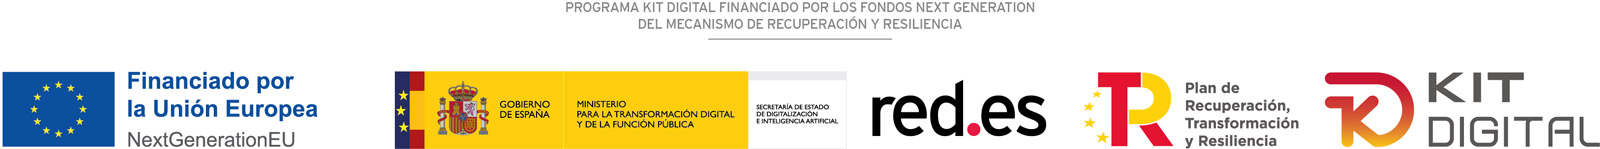 Programa kit digital financiado por los fondos next generation del mecanismo de recuperación y resiliencia